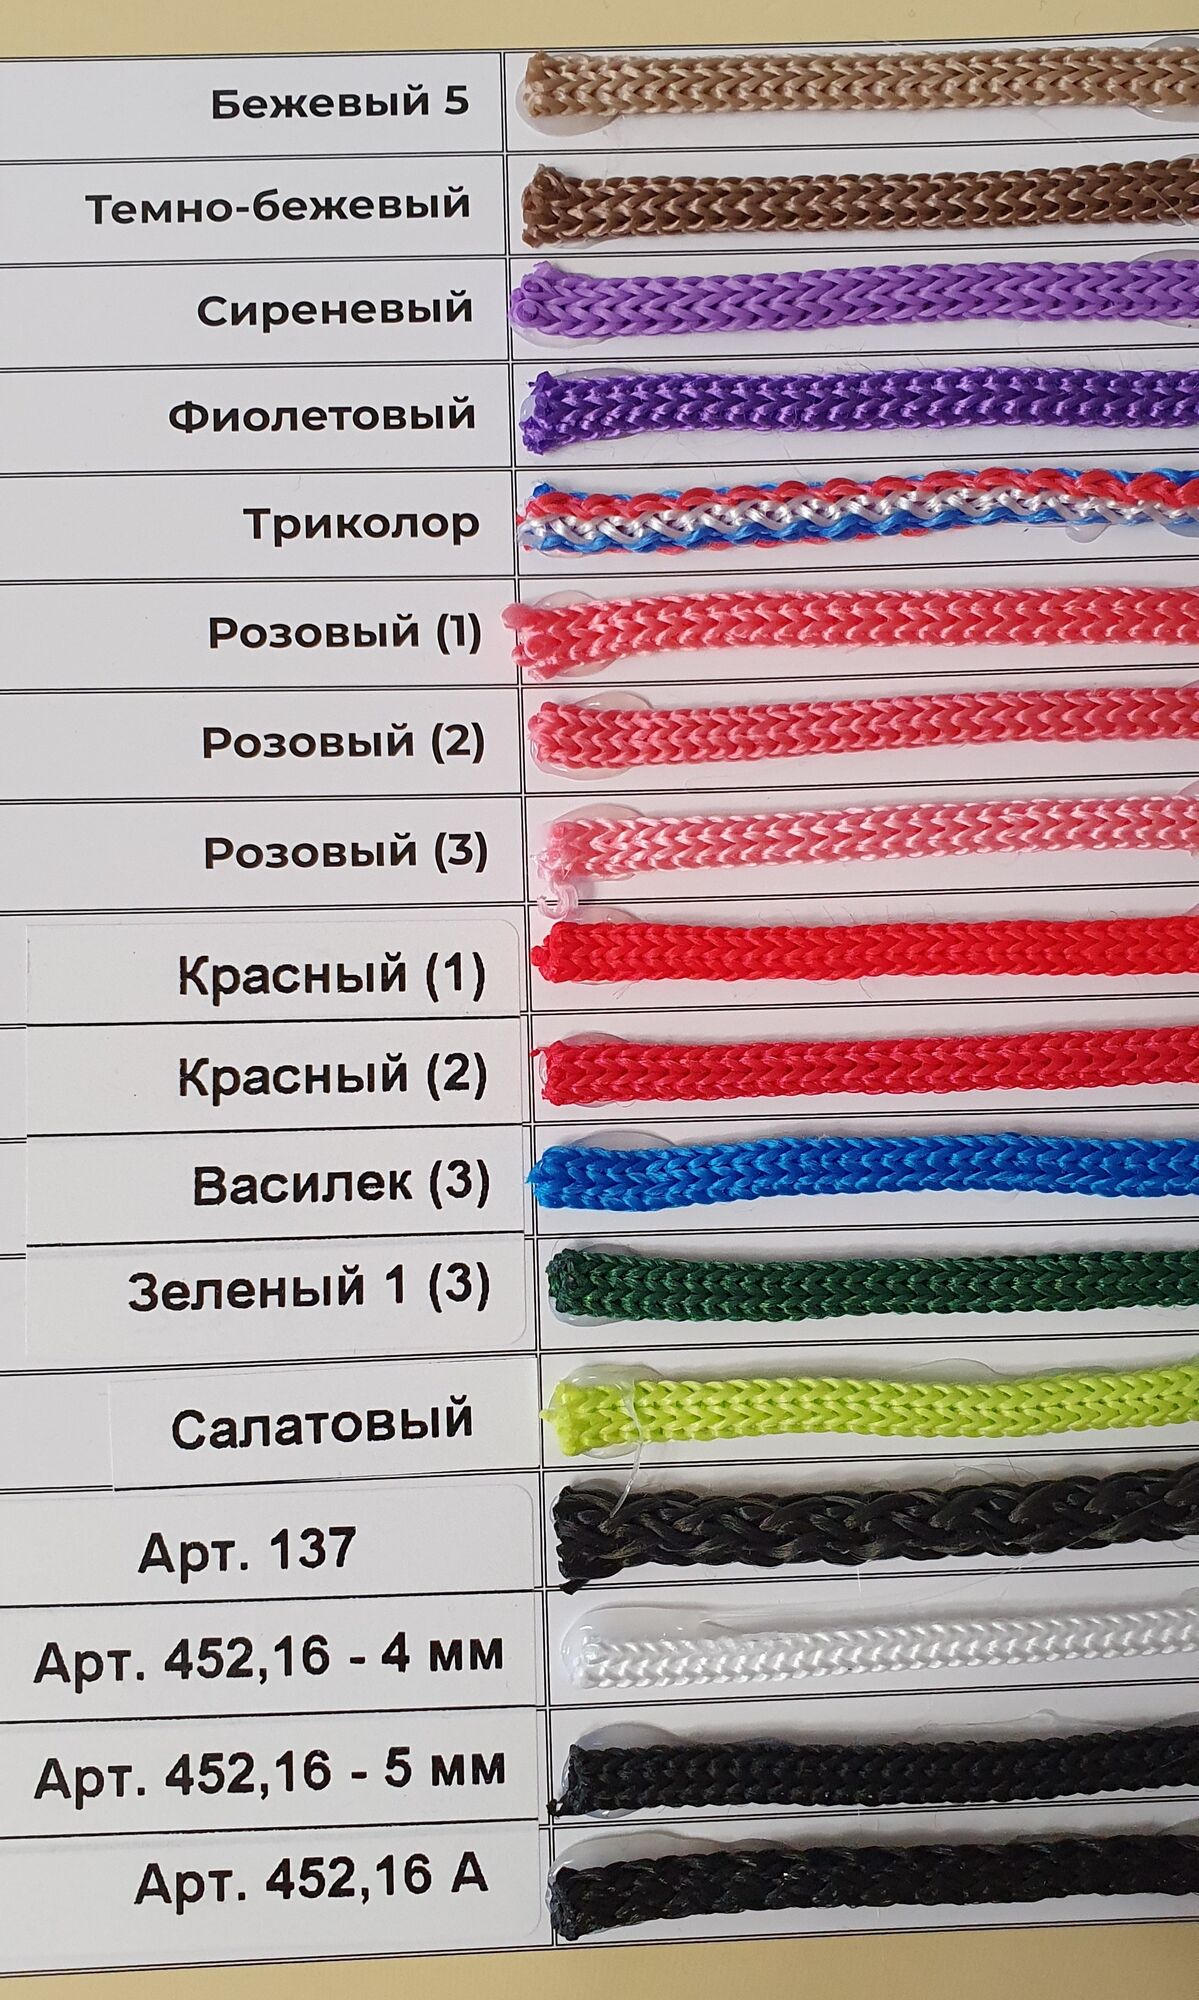 карта цветов полипропиленового шнура 6